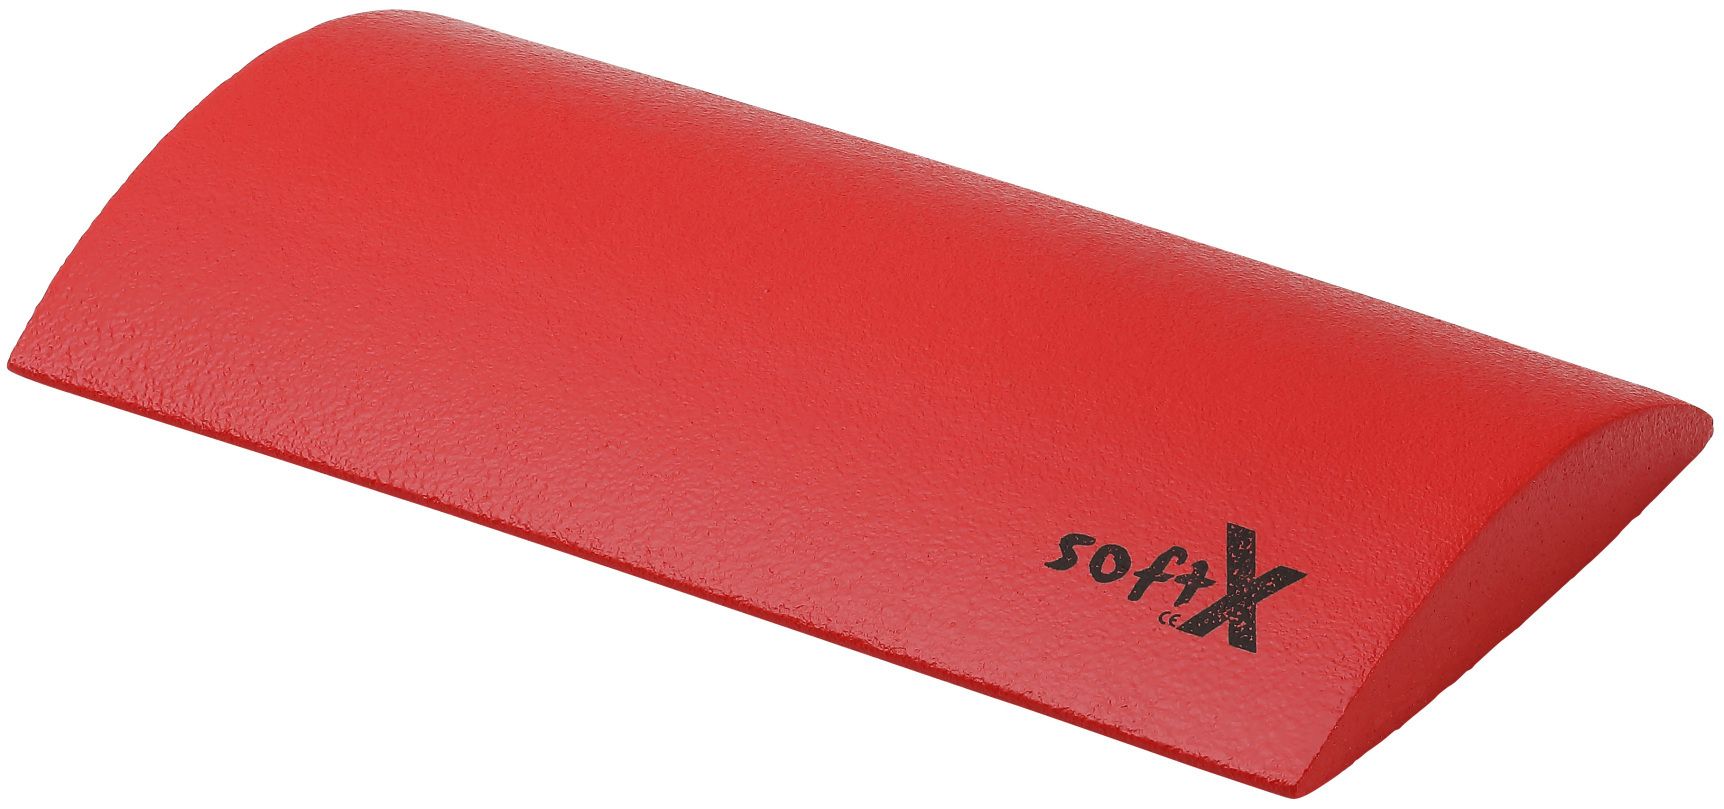 softX® Lordosekissen, Rot, 40 x 25 x 4,5 cm 1 St - SHOP APOTHEKE